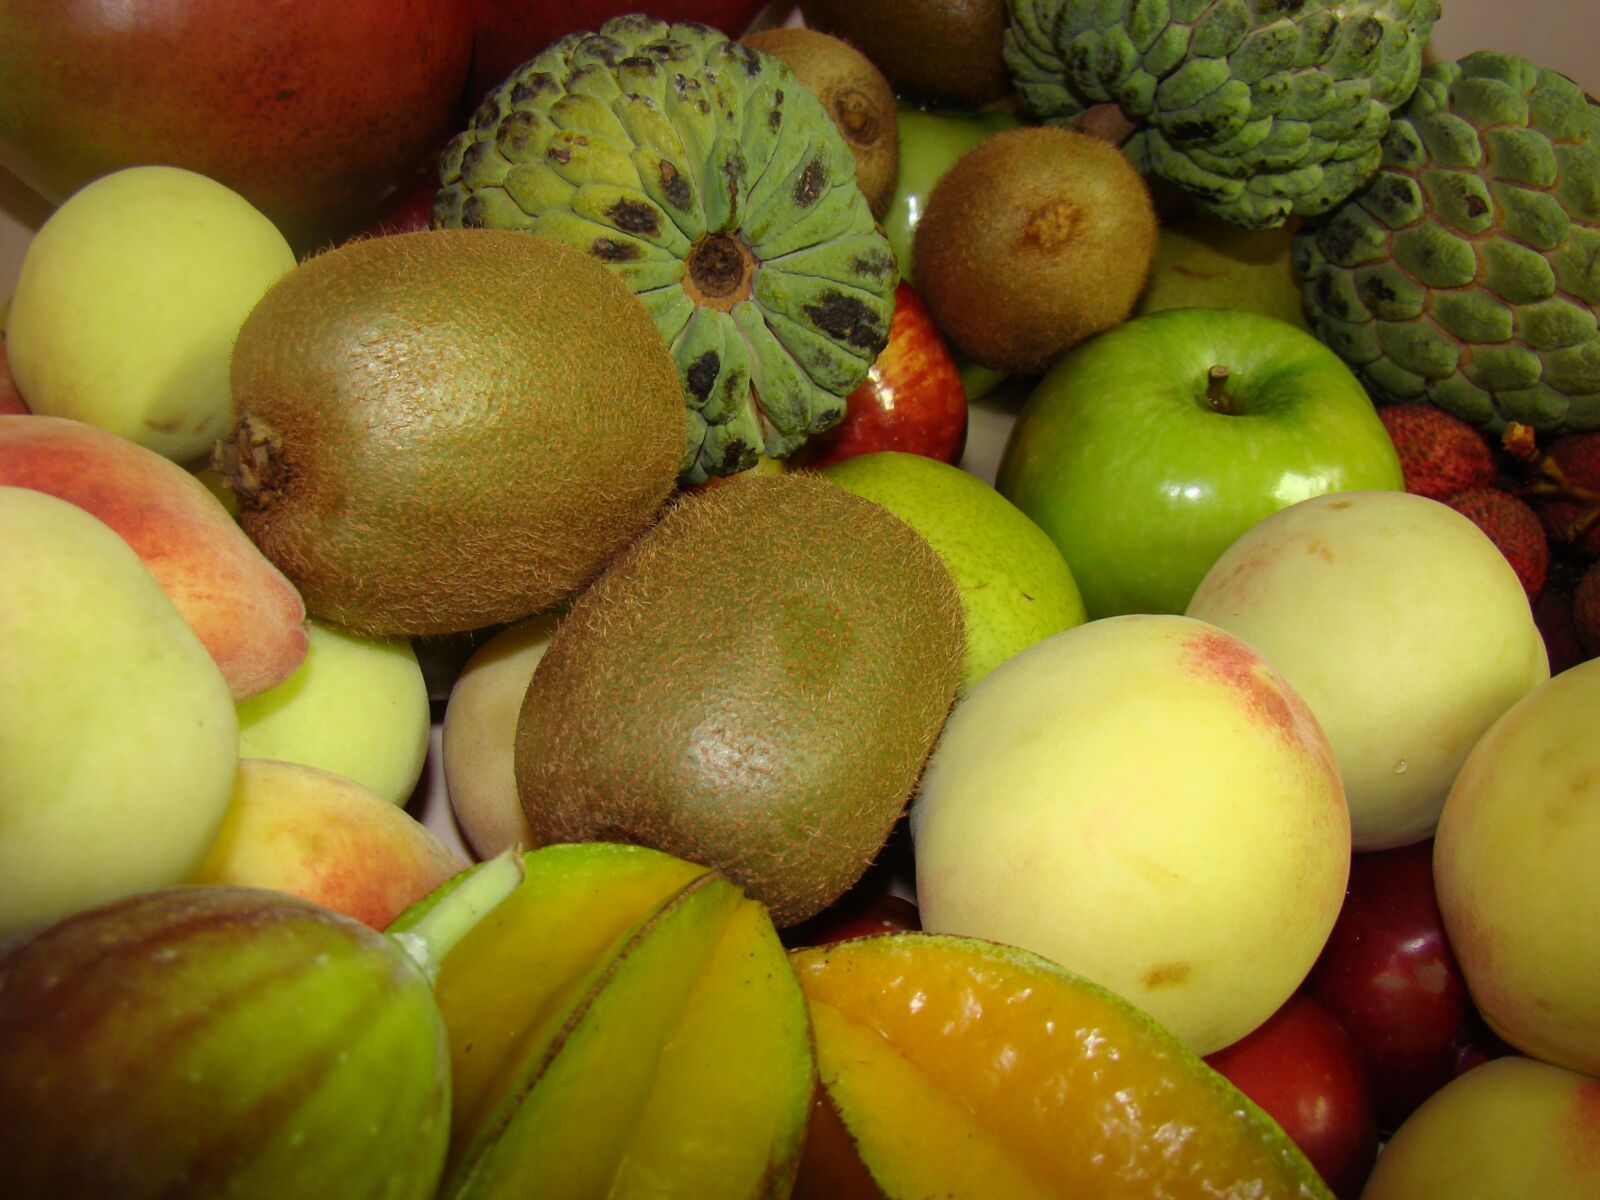 Sony DSC-H9 sample photo. Fruit, brazil, carom photography